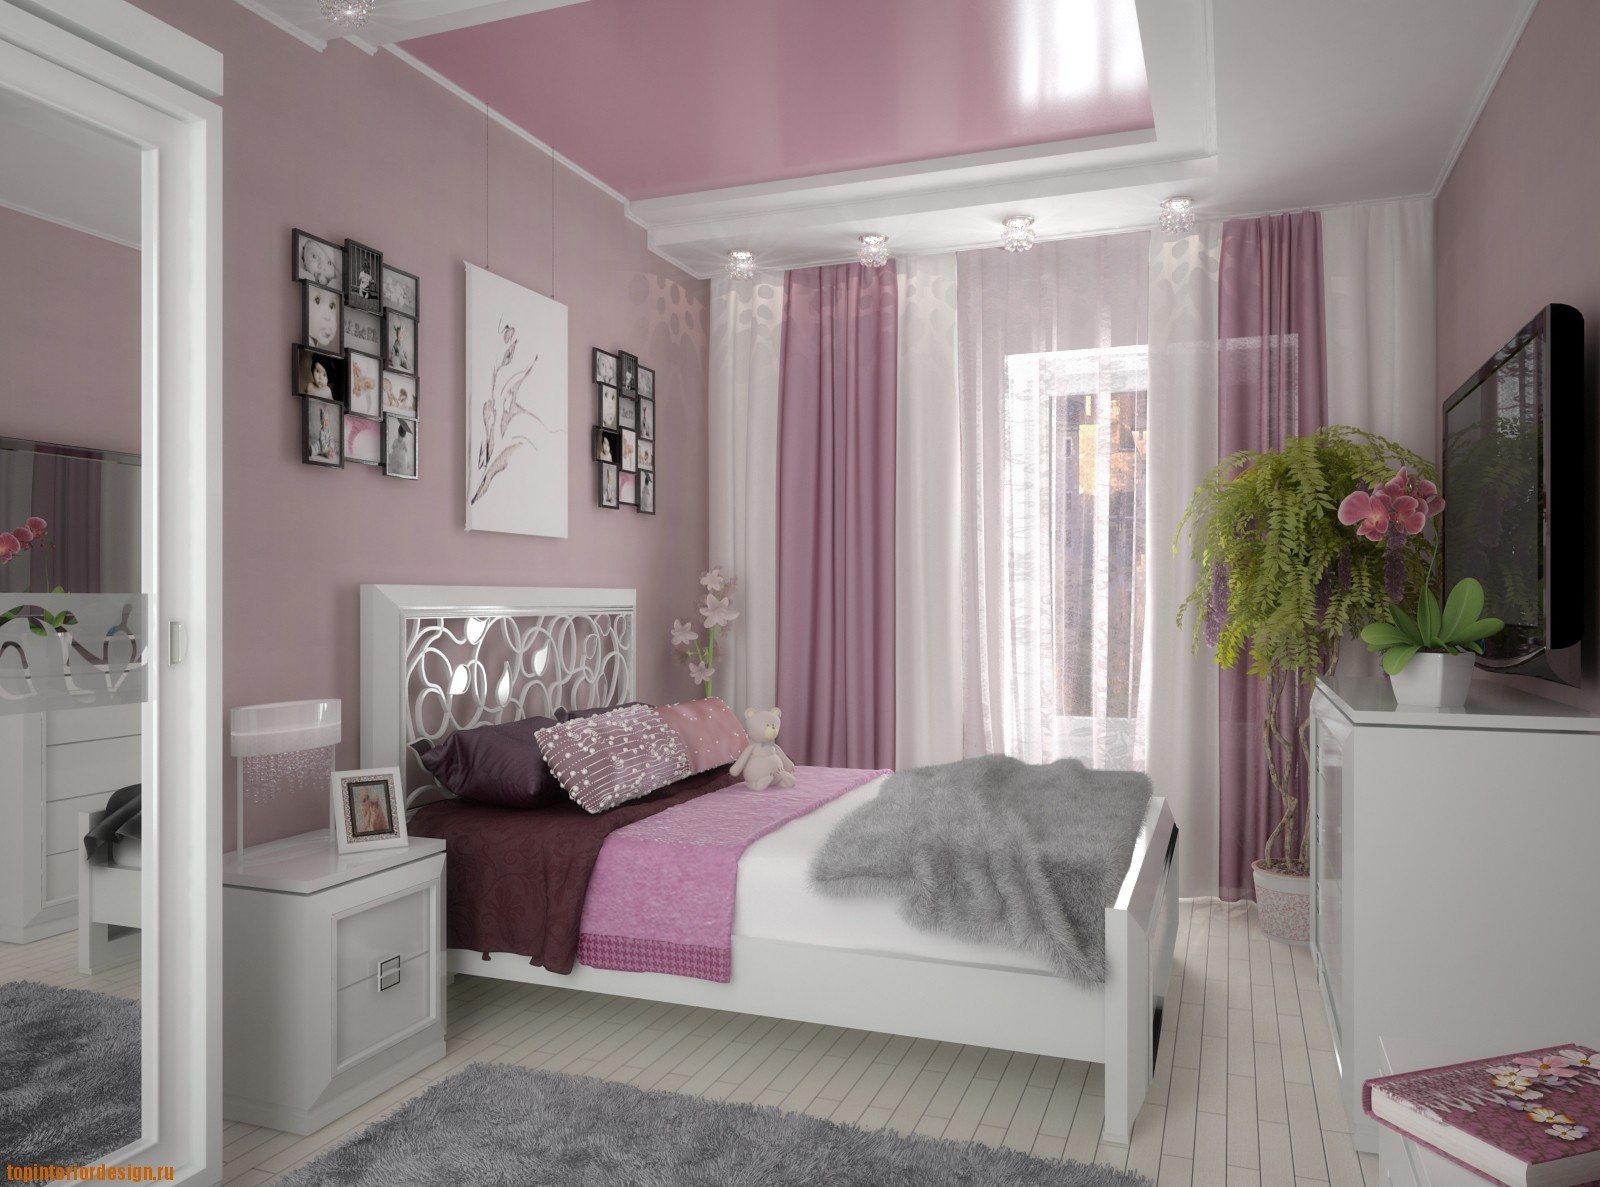 Серо розовая комната. Интерьер комнаты для девочки. Спальня в розовых тонах. Интерьер спальни для девушки. Спальня для девочки в розовых тонах.